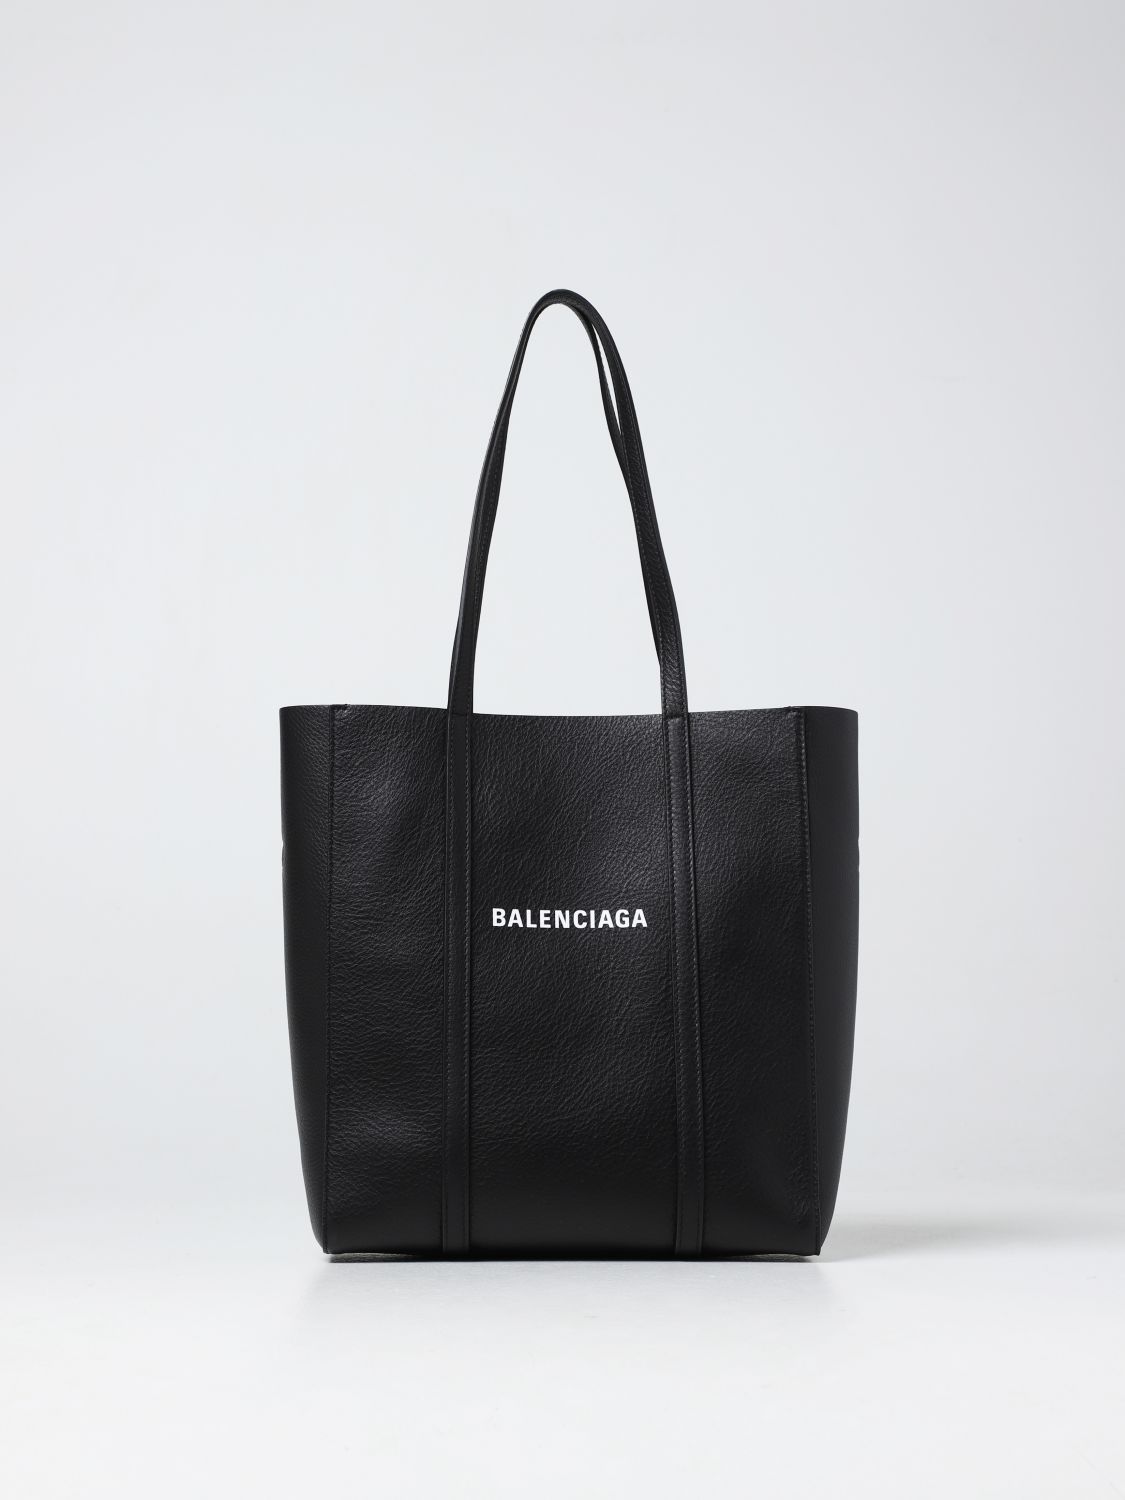 BALENCIAGA: Everyday smooth leather tote bag - Black | Balenciaga tote ...